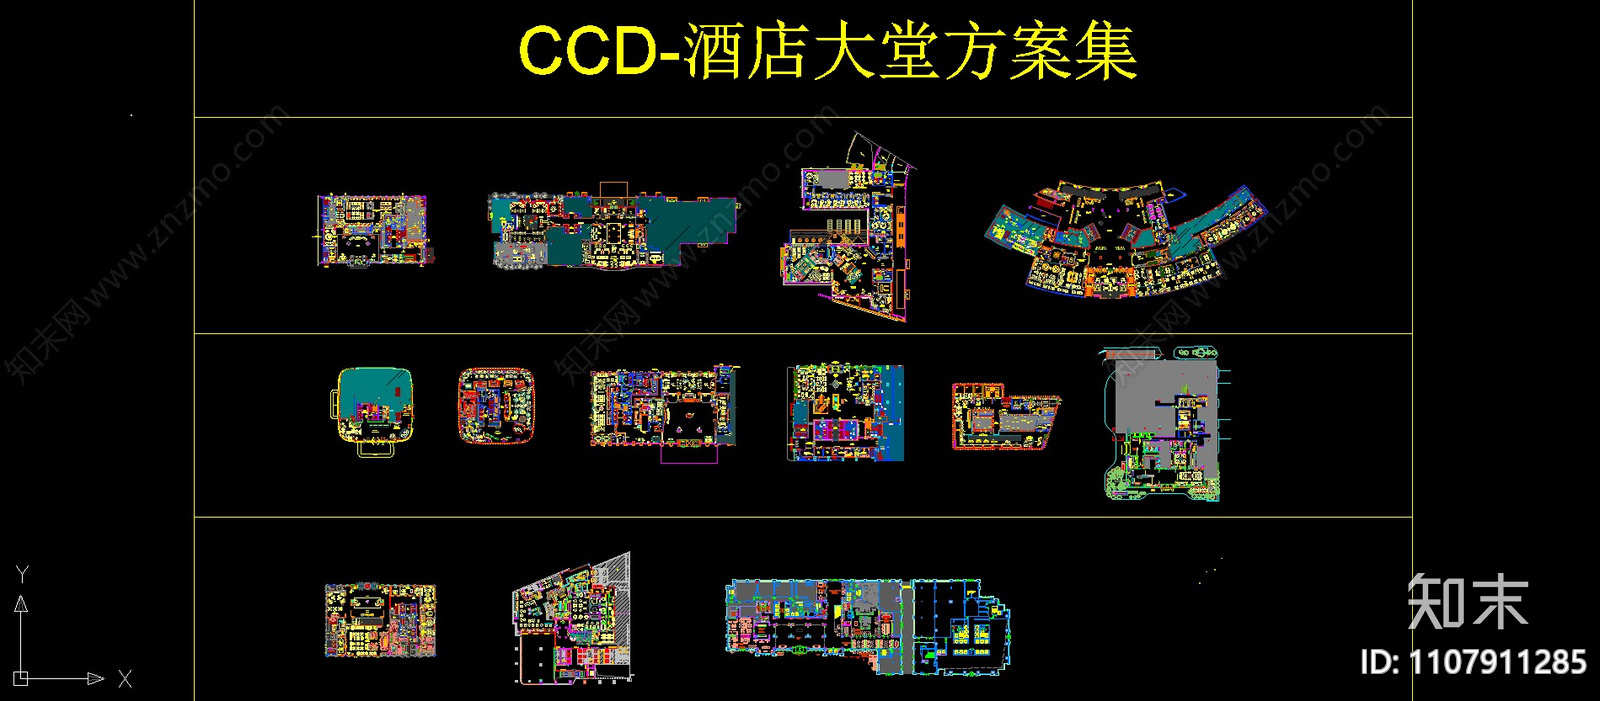 CCD施工图下载【ID:1107911285】